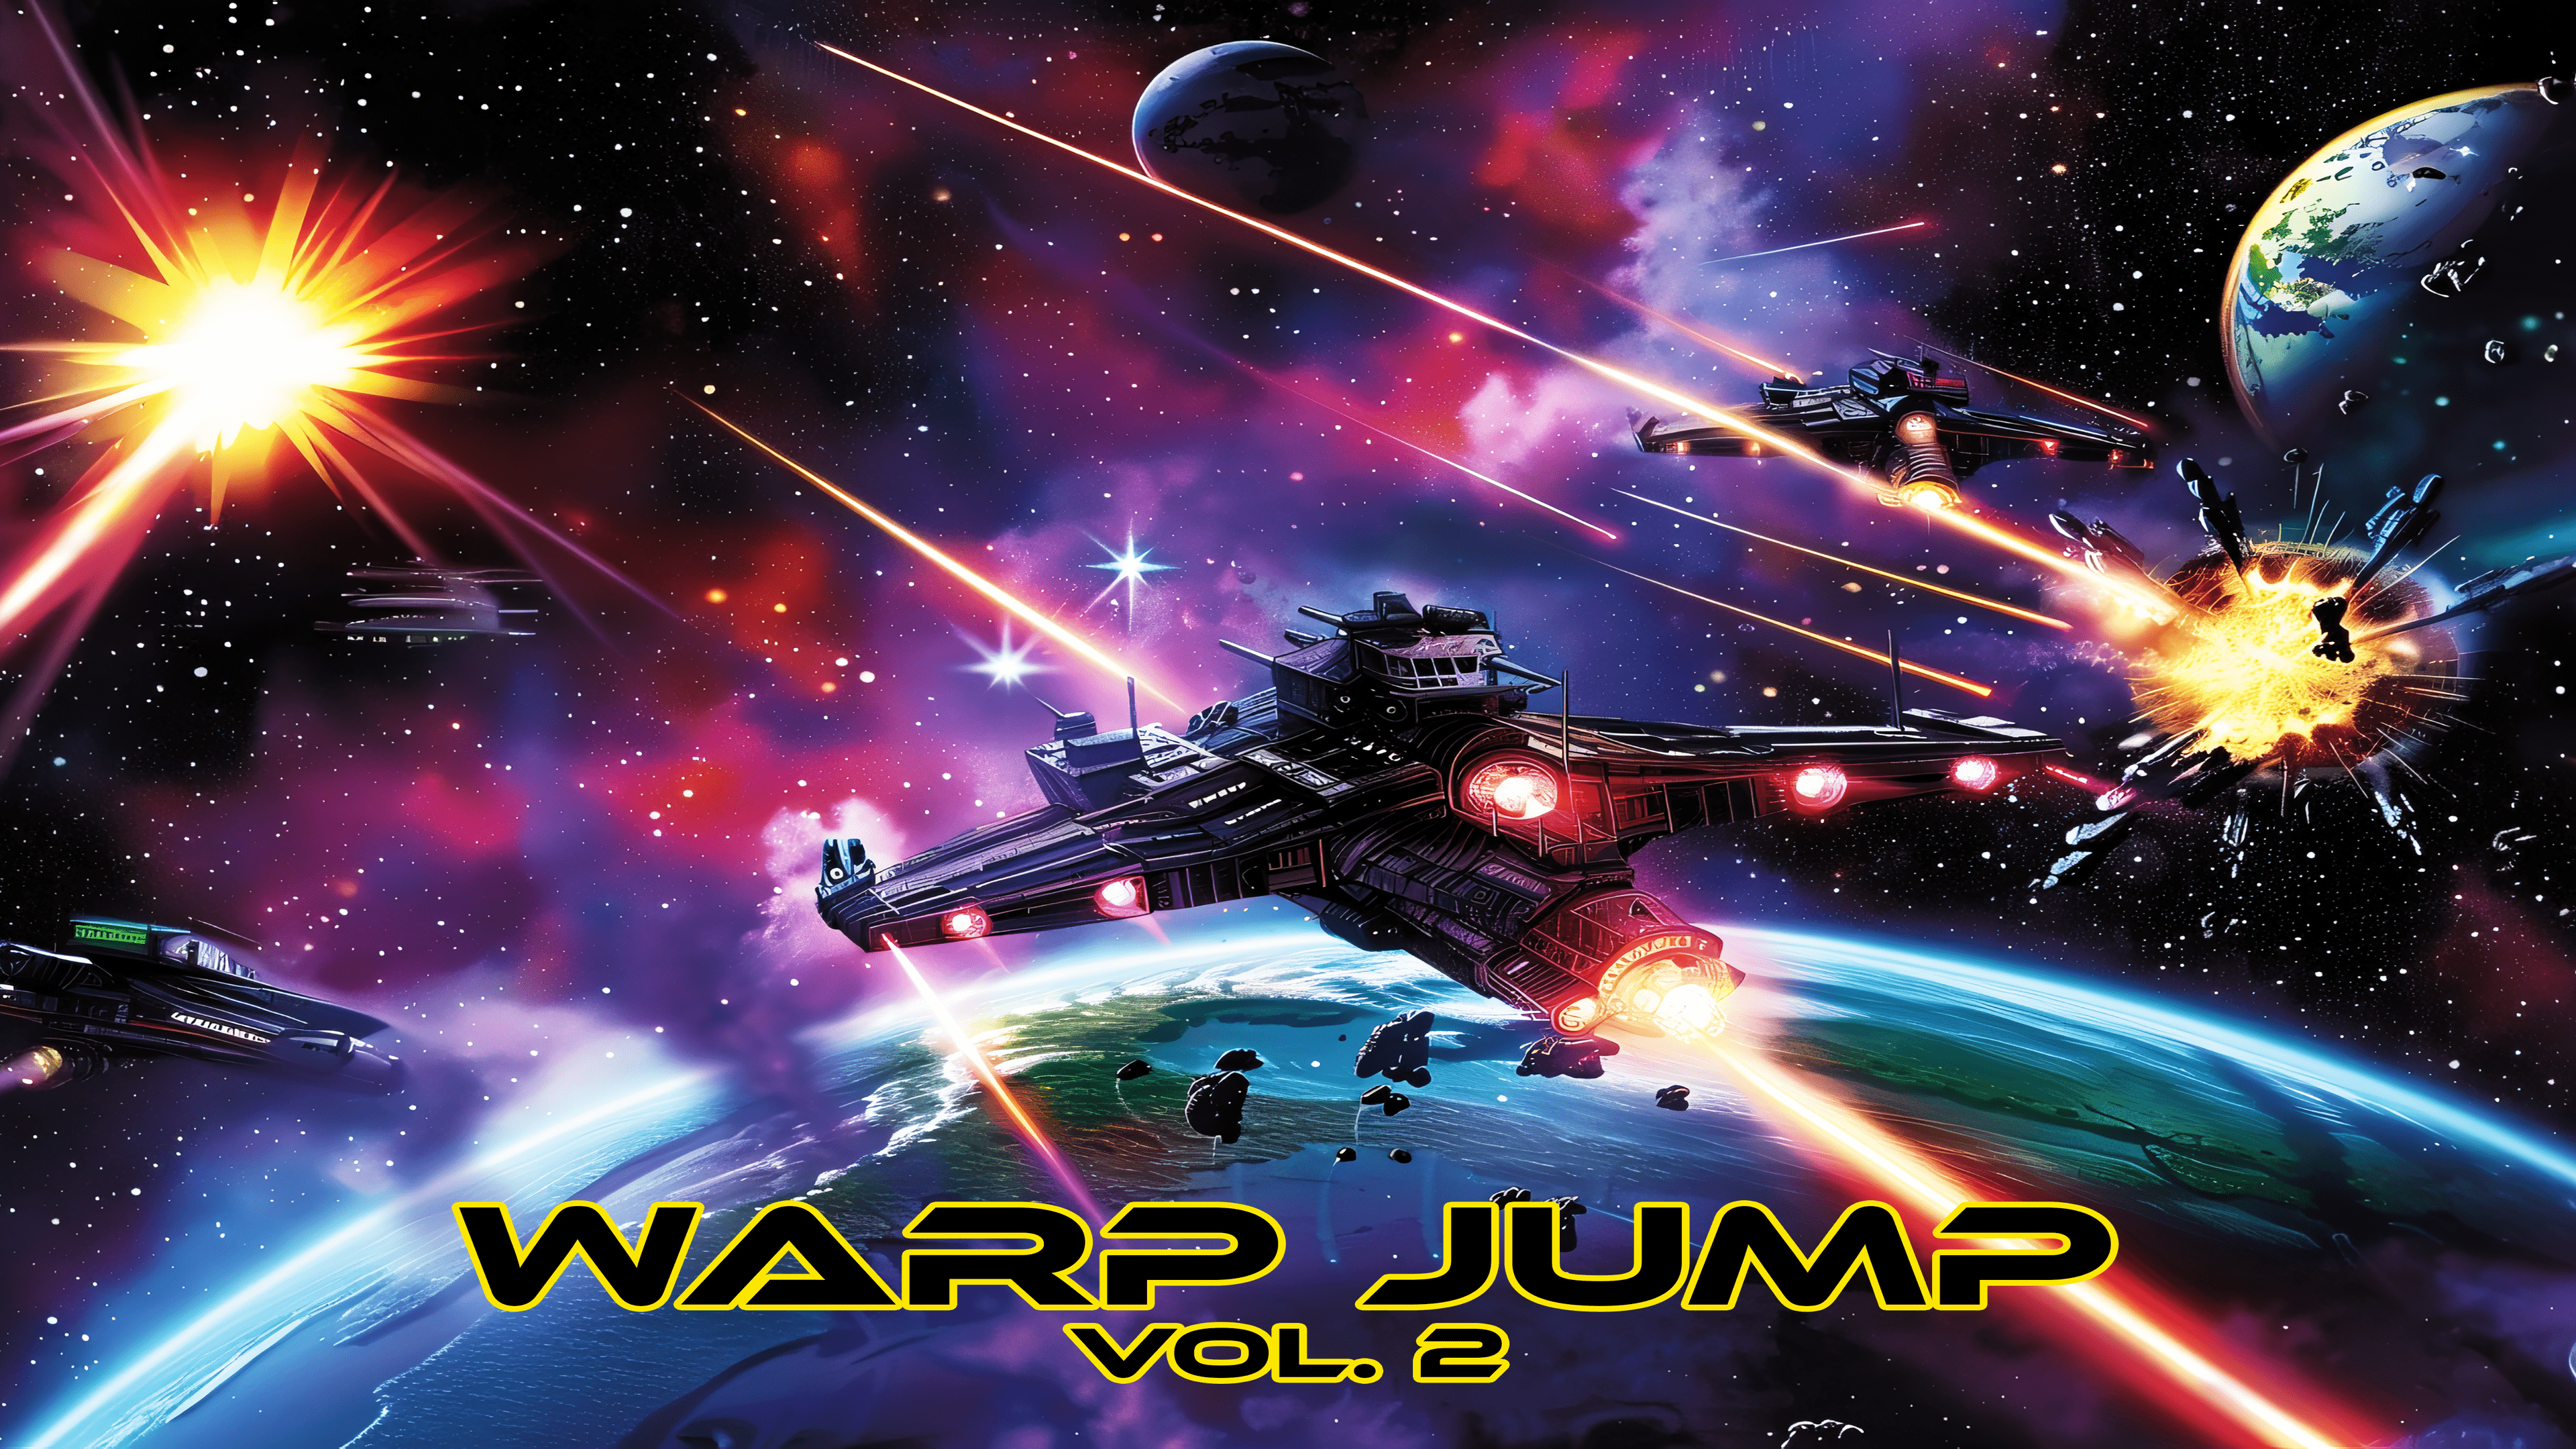 Warp Jump Vol. 2